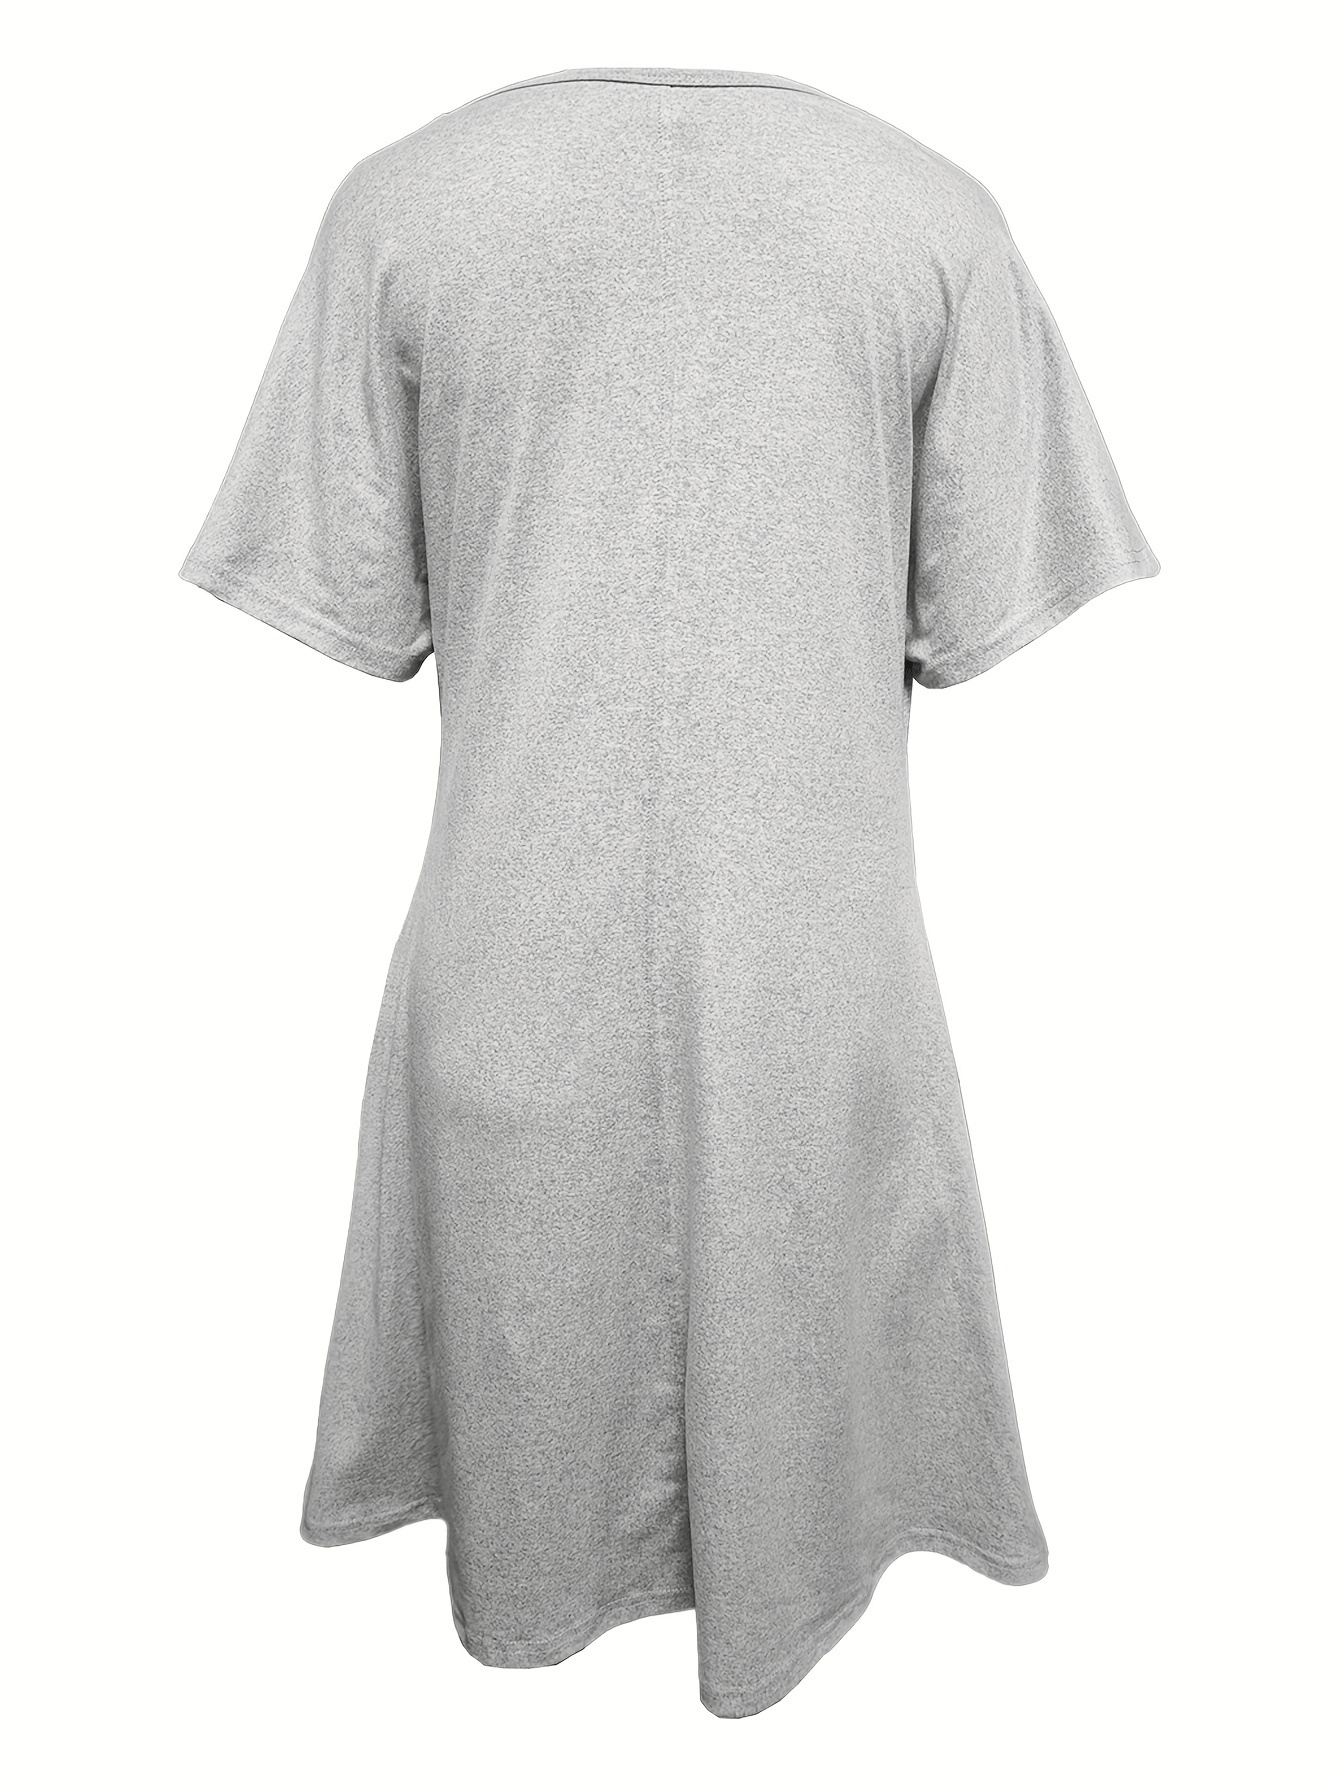 Faith Women's Christian Pajama Dress claimedbygoddesigns